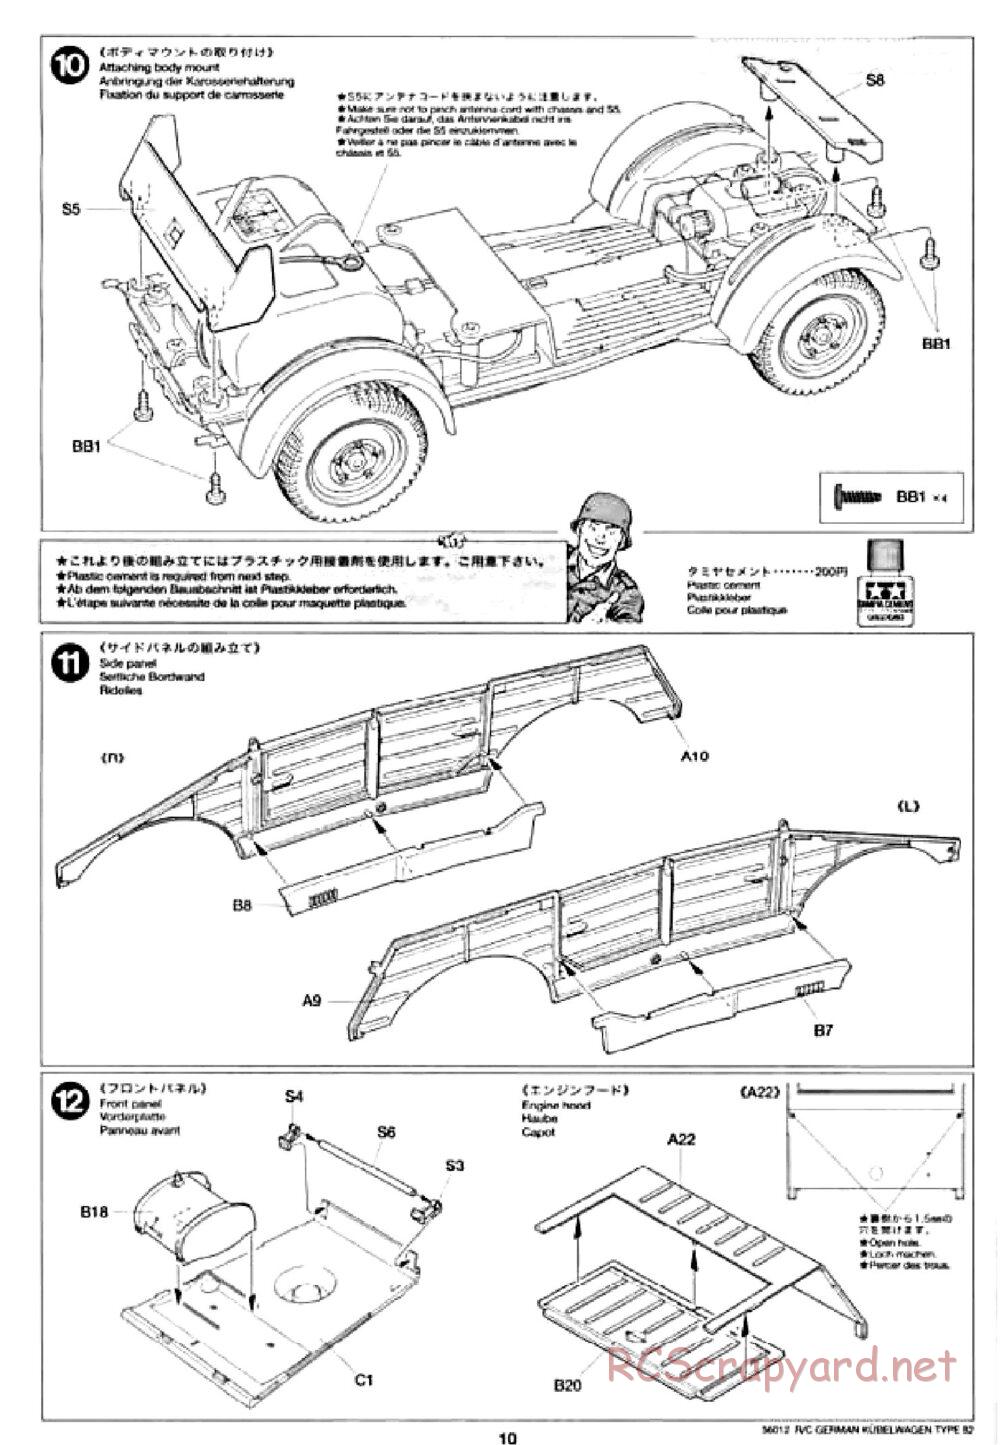 Tamiya - Kubelwagen Type 82 Chassis - Manual - Page 10